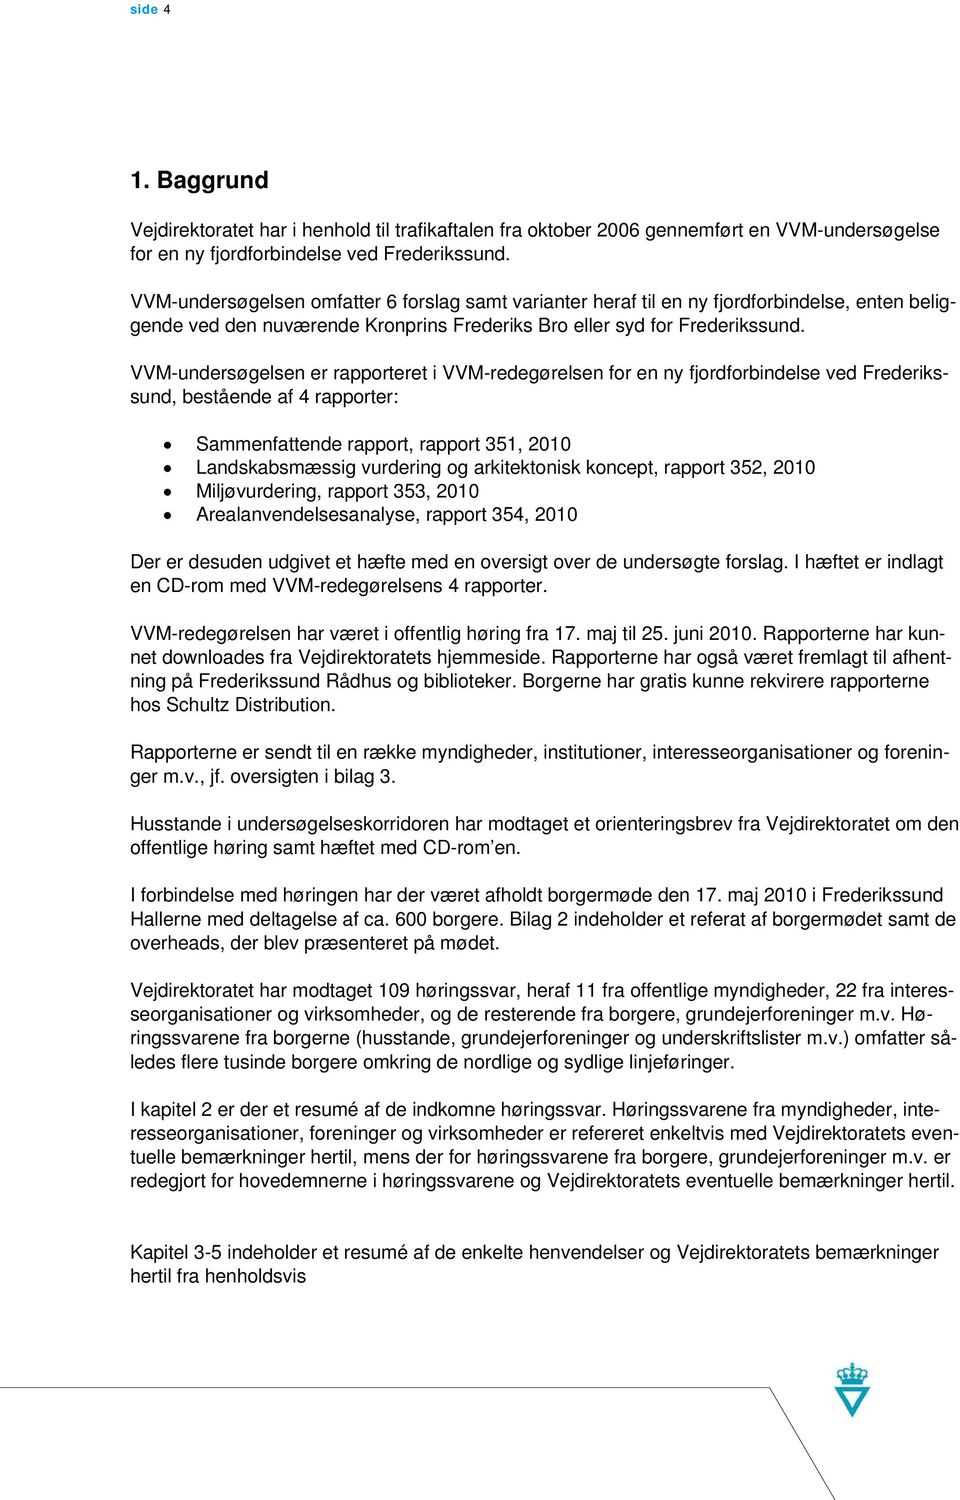 VVM-undersøgelsen er rapporteret i VVM-redegørelsen for en ny fjordforbindelse ved Frederikssund, bestående af 4 rapporter: Sammenfattende rapport, rapport 351, 2010 Landskabsmæssig vurdering og